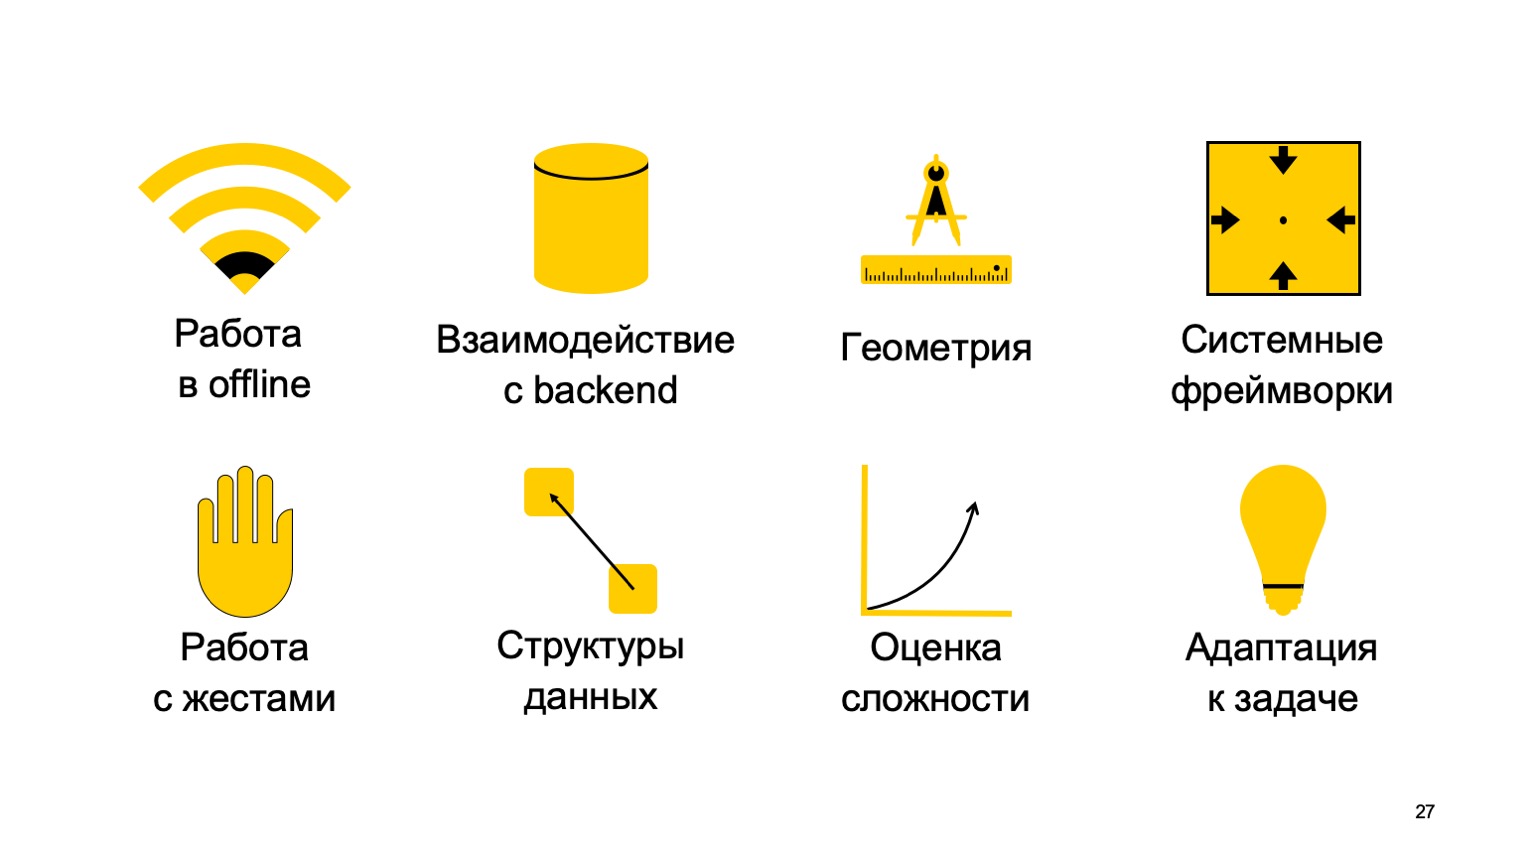 Мобильная разработка — это просто и скучно? Доклад Яндекса - 27